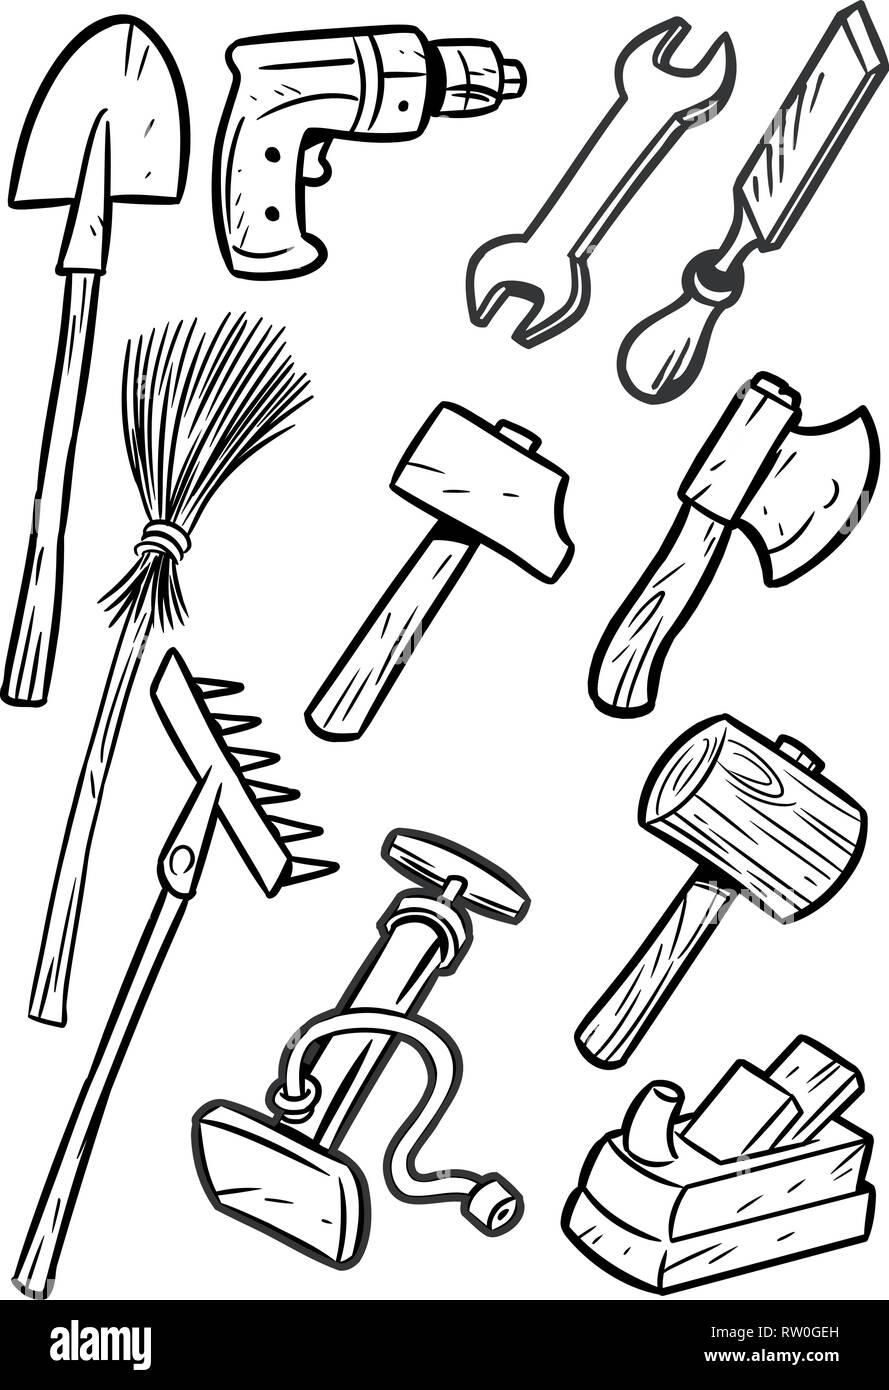 La figura mostra alcuni tipi di strumenti di costruzione. Illustrazione fatta contorno nero isolato su sfondo bianco, su livelli separati. Illustrazione Vettoriale